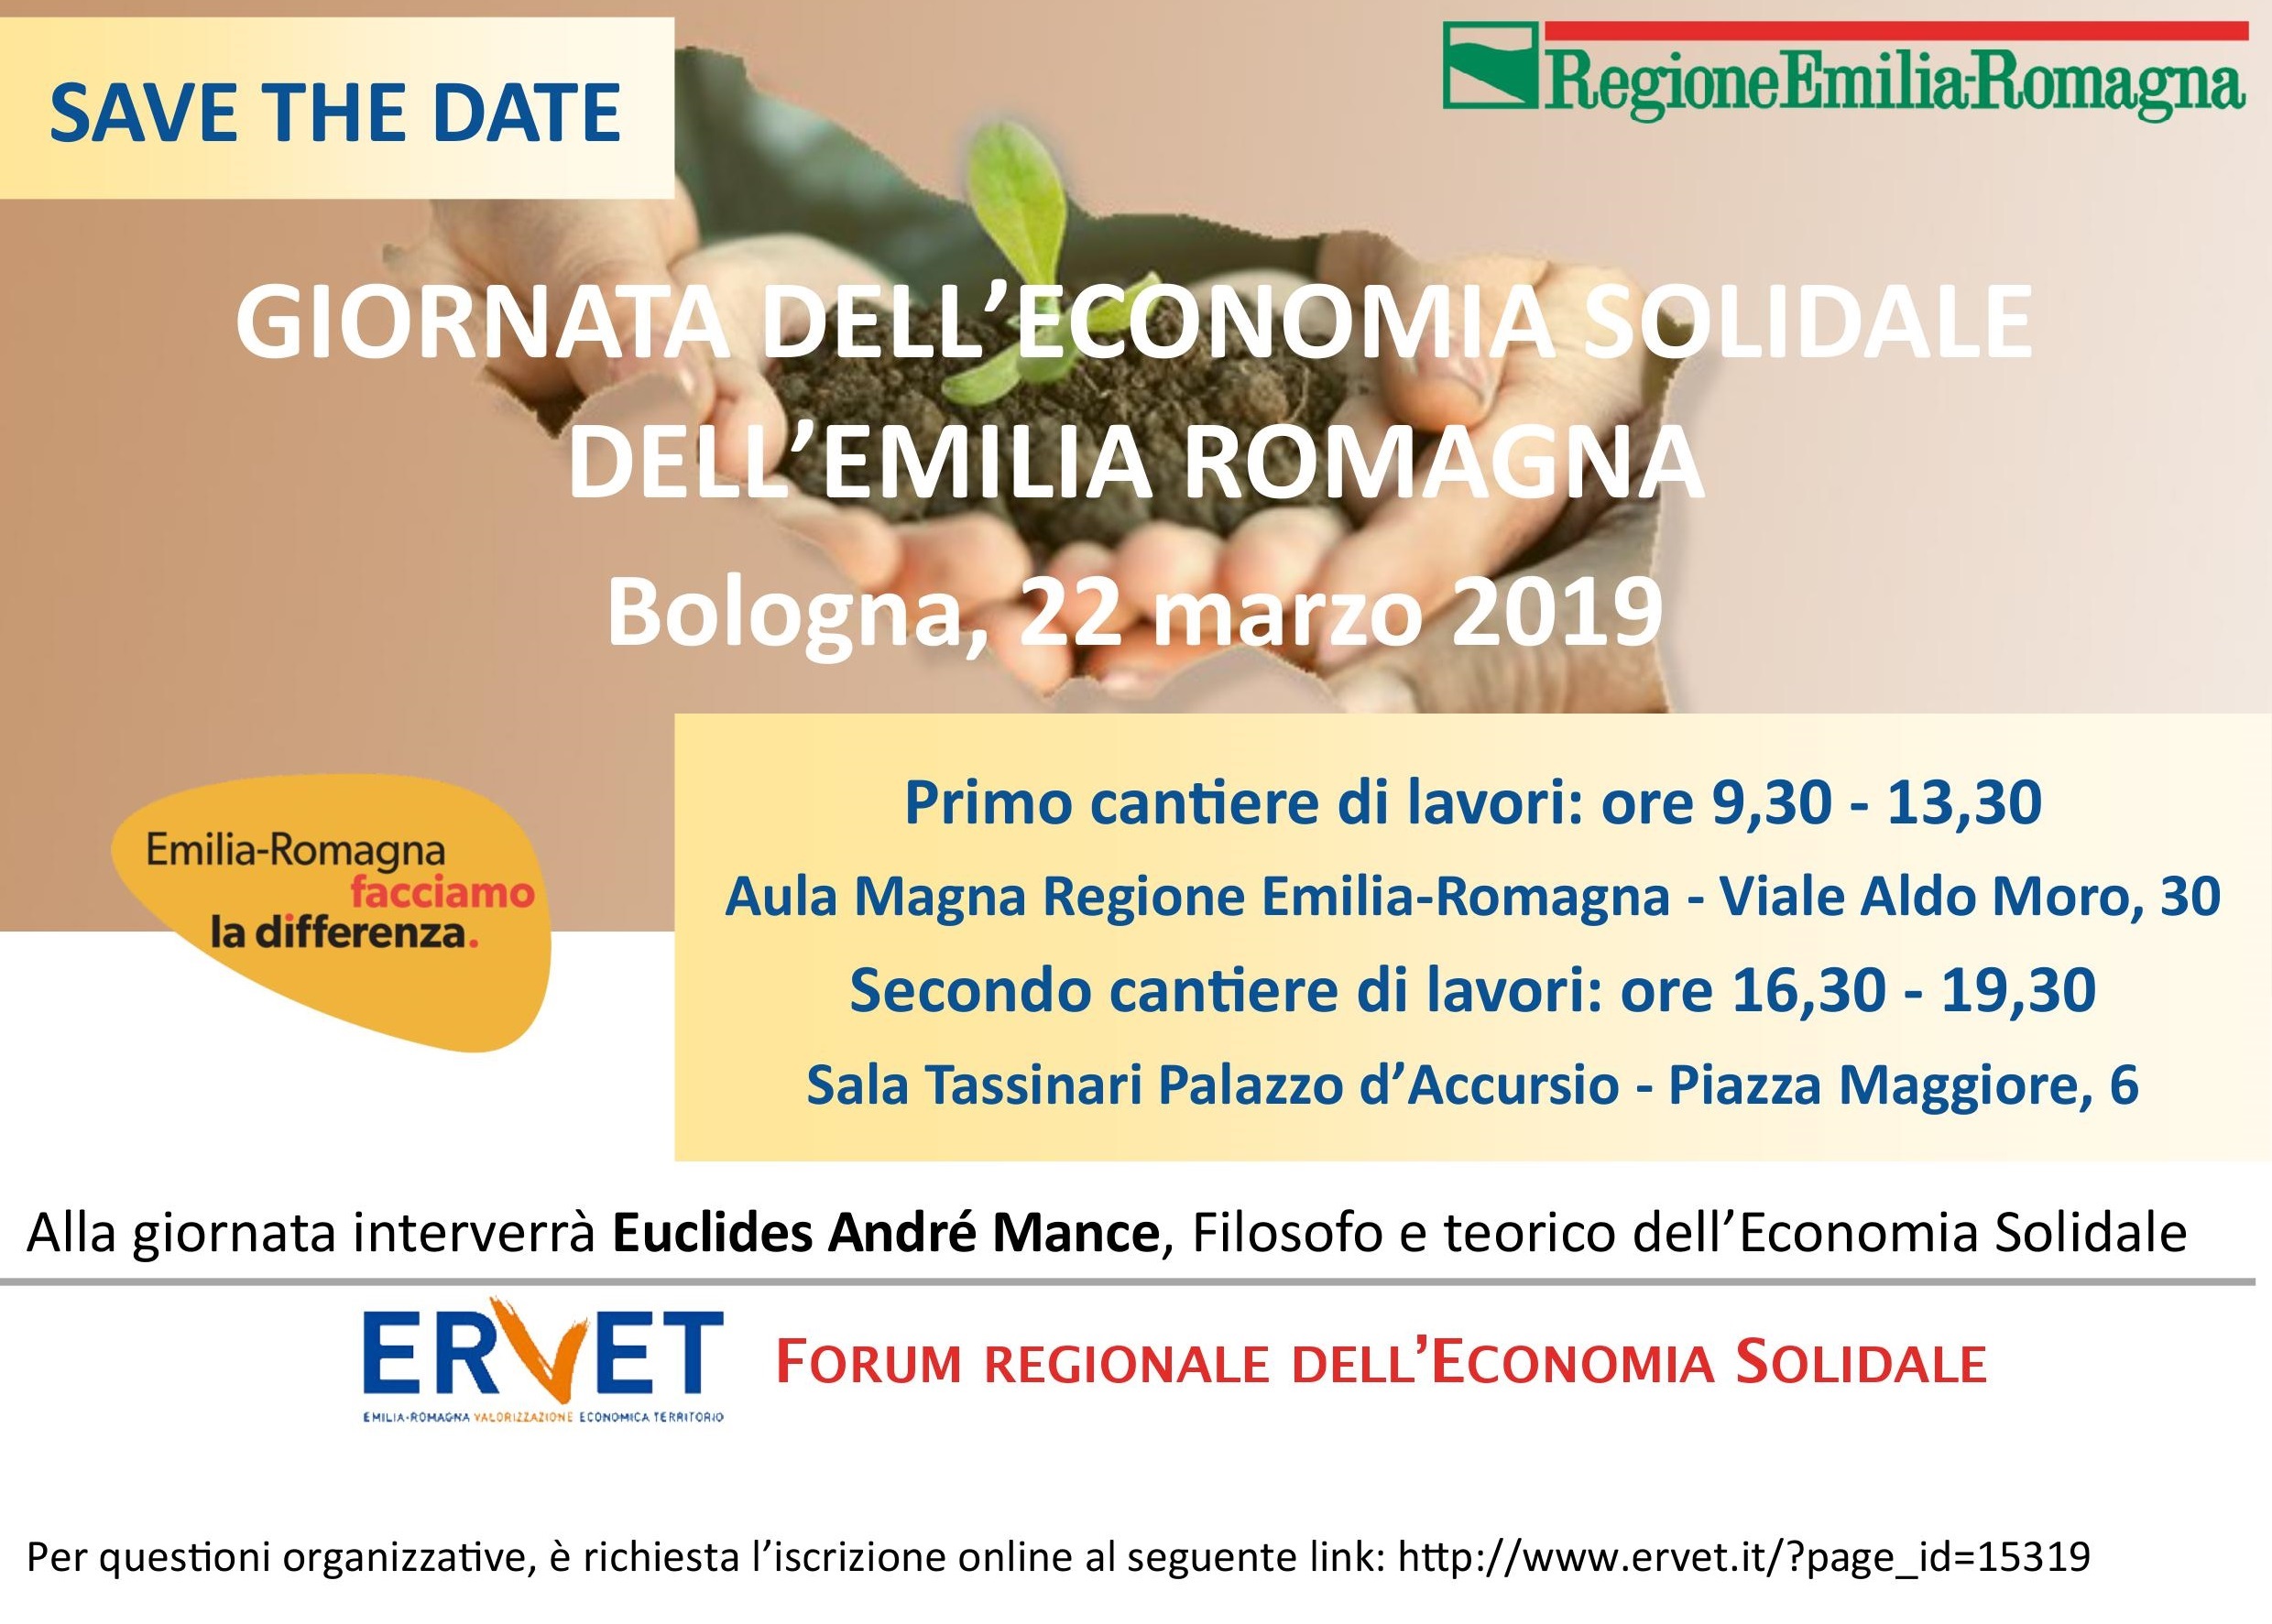 Giornata dell’economia solidale in Emilia Romagna: 22 marzo 2019